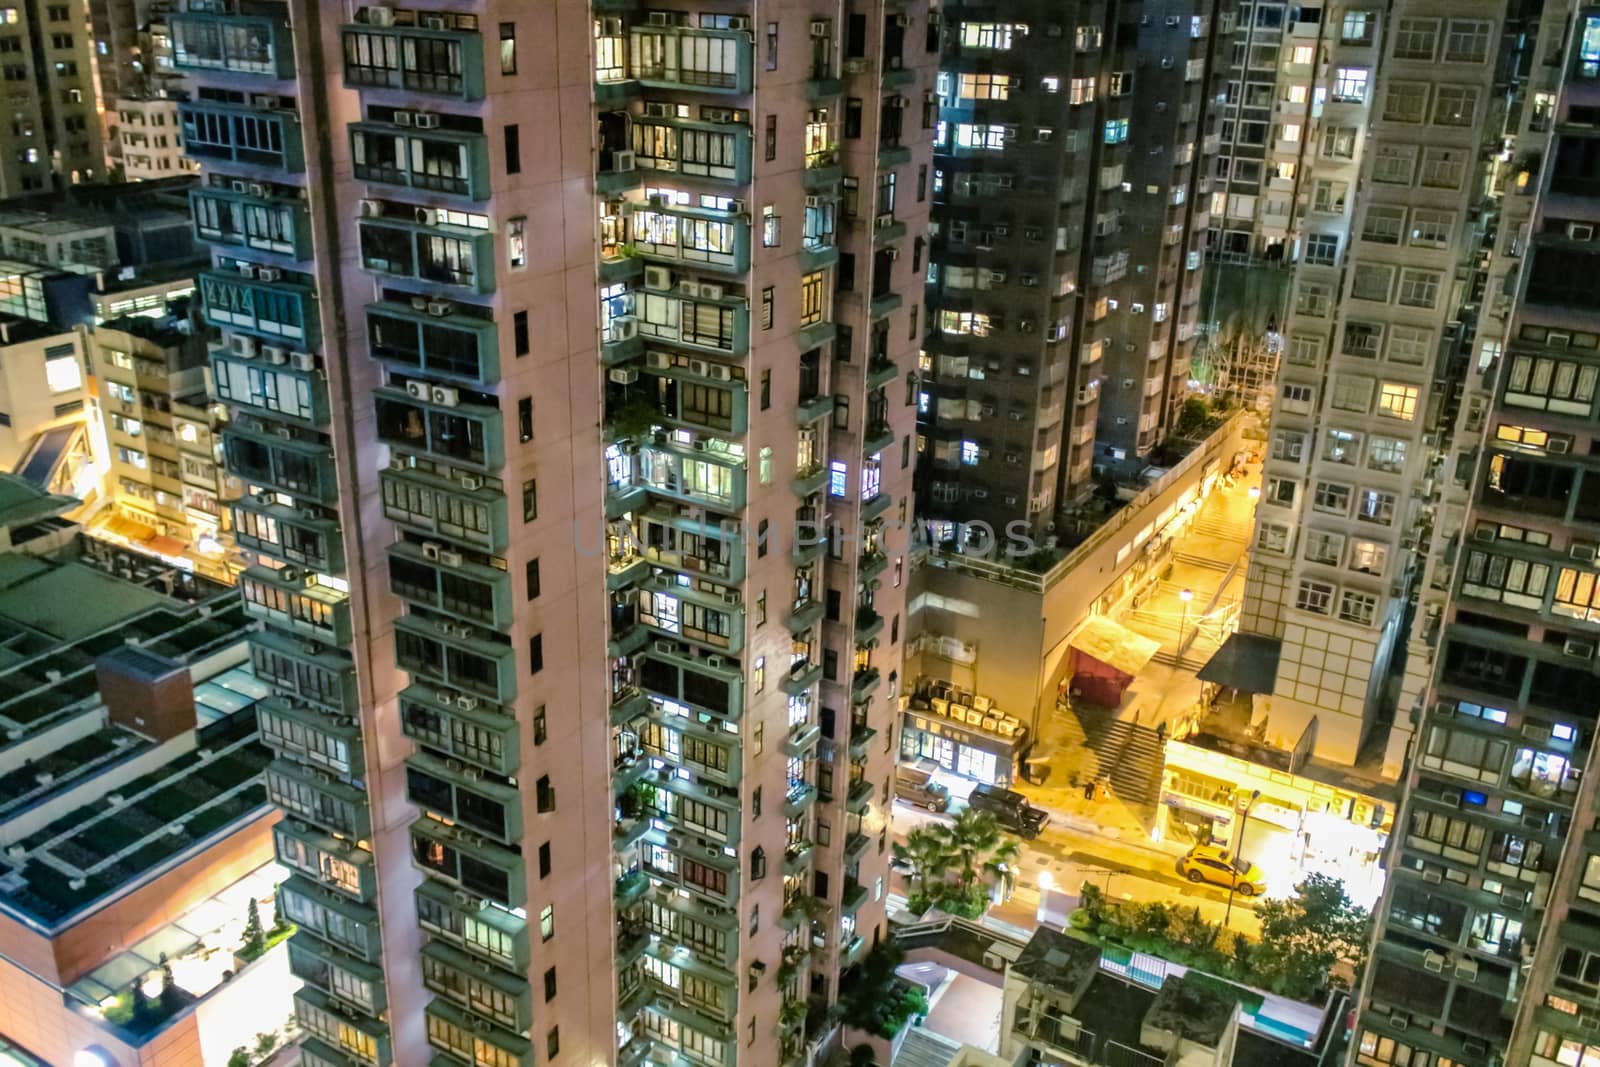 The skyscrapers of Hong Kong close up at night